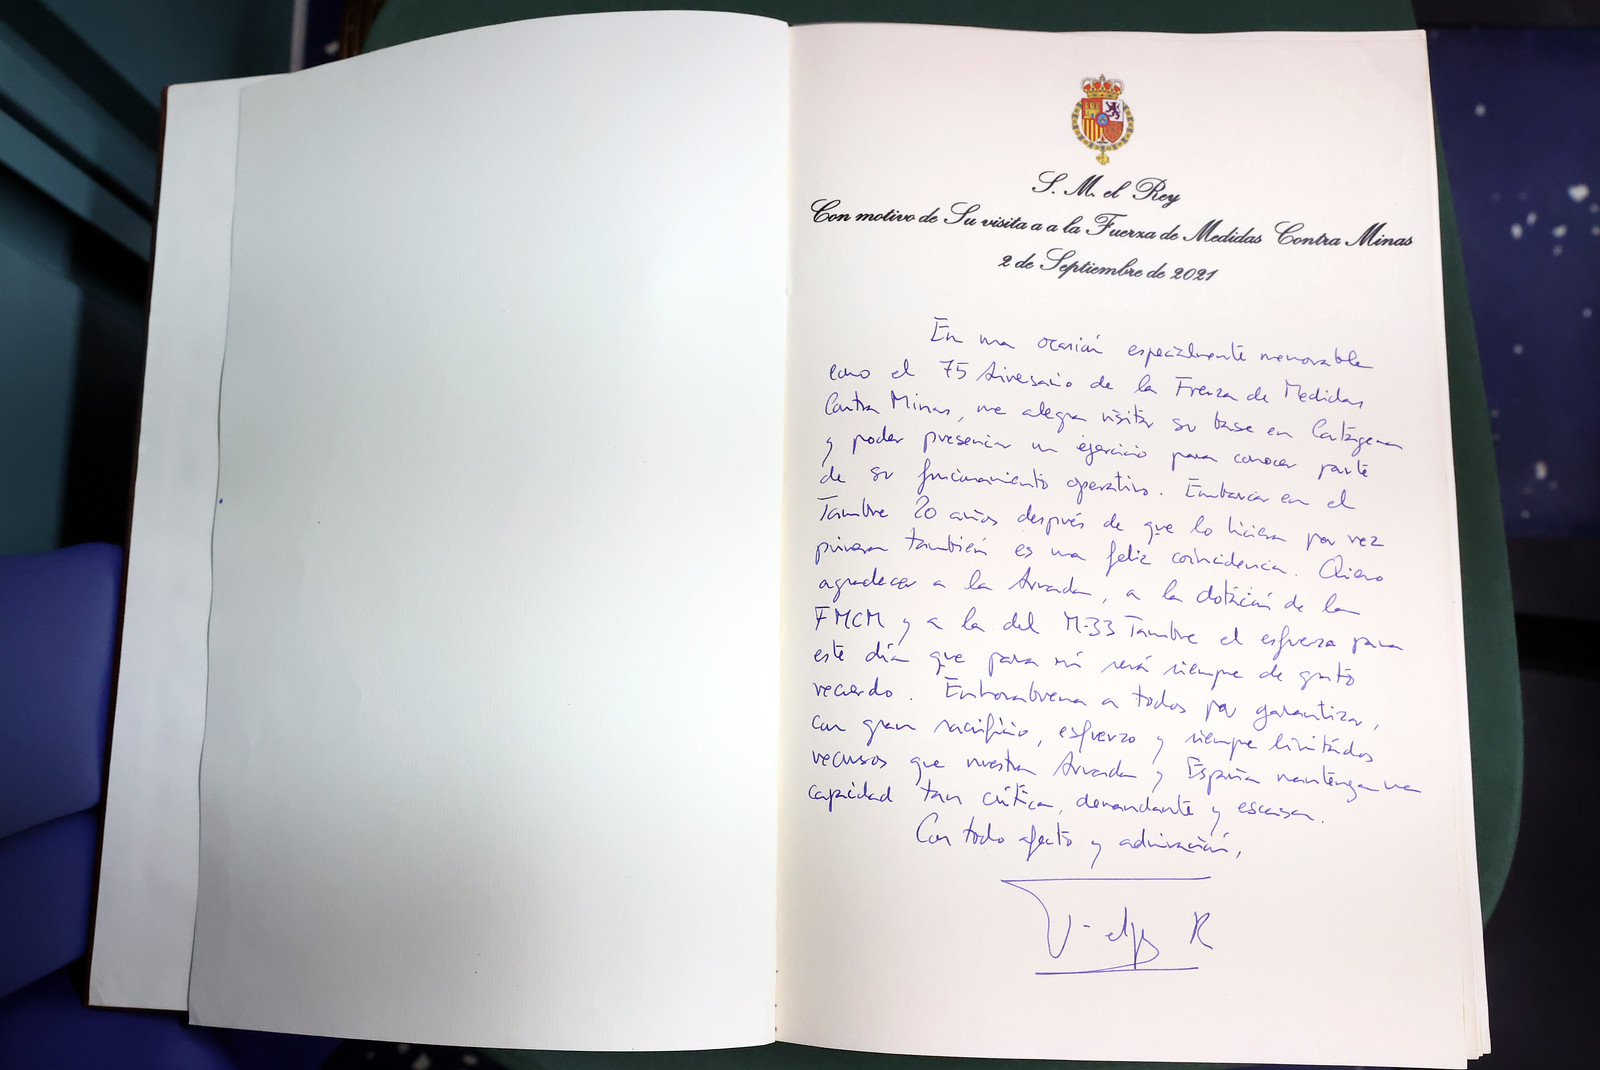 09.02.21 Visita S.M. el Rey a FMCM Cartagena